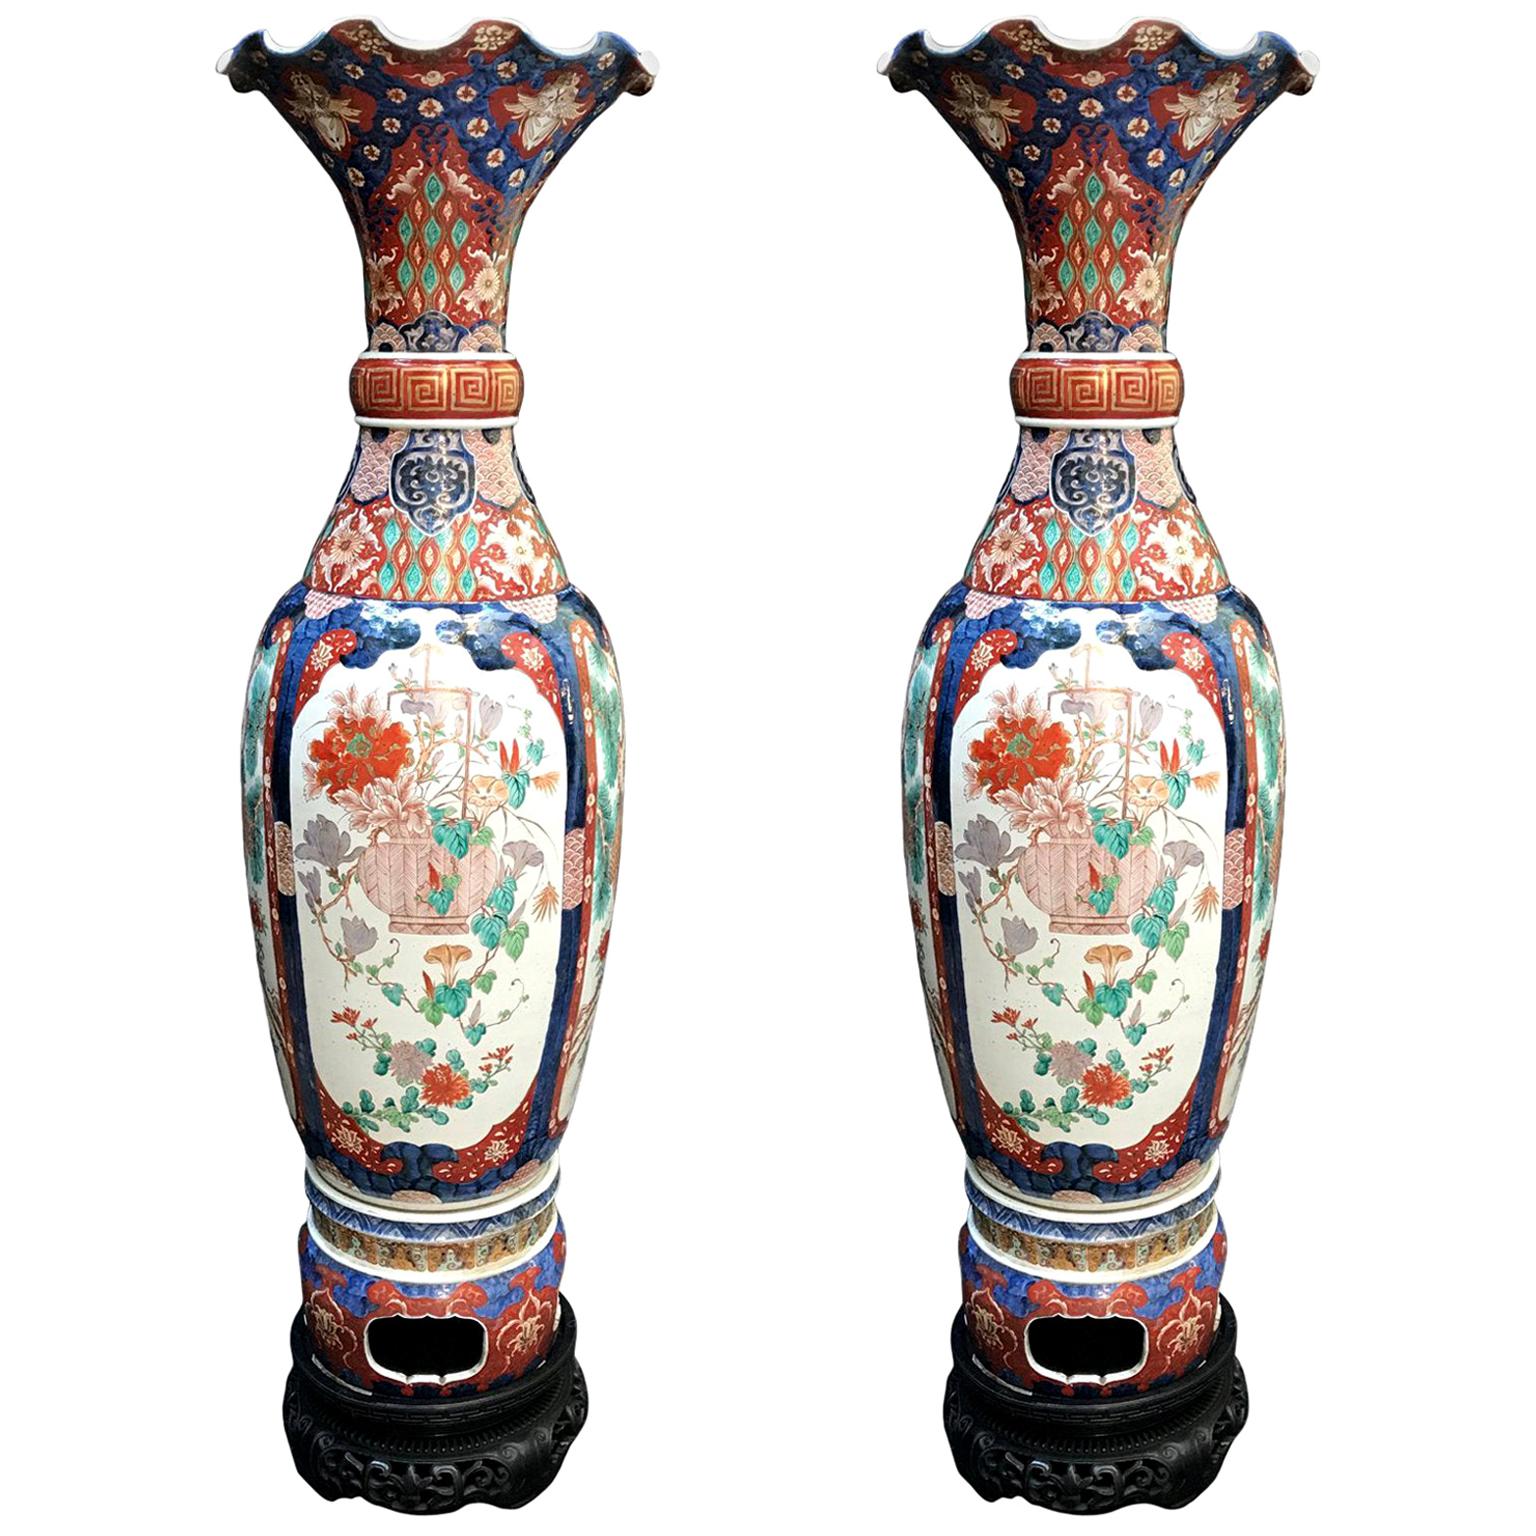 Pair of Large Imari Vases 19th Century Japanese Blue Red White Porcelain Vases